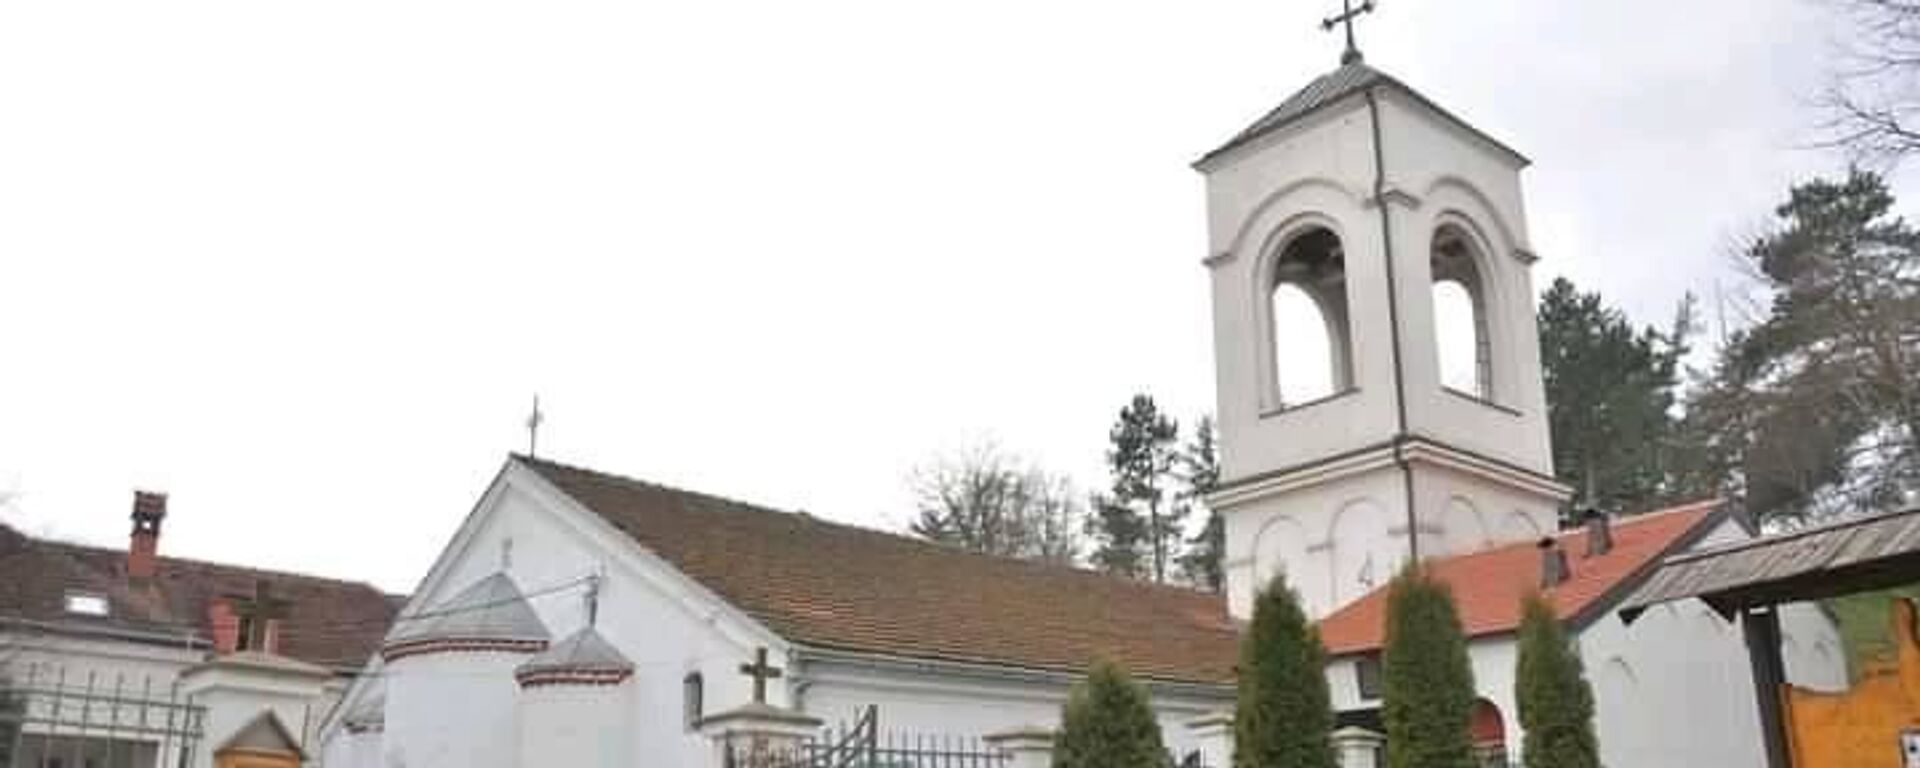 Црква Светог Прокопија је 1983. године проглашена спомеником културе од великог значаја и данас се налази под заштитом Републике Србије.  - Sputnik Србија, 1920, 06.05.2021